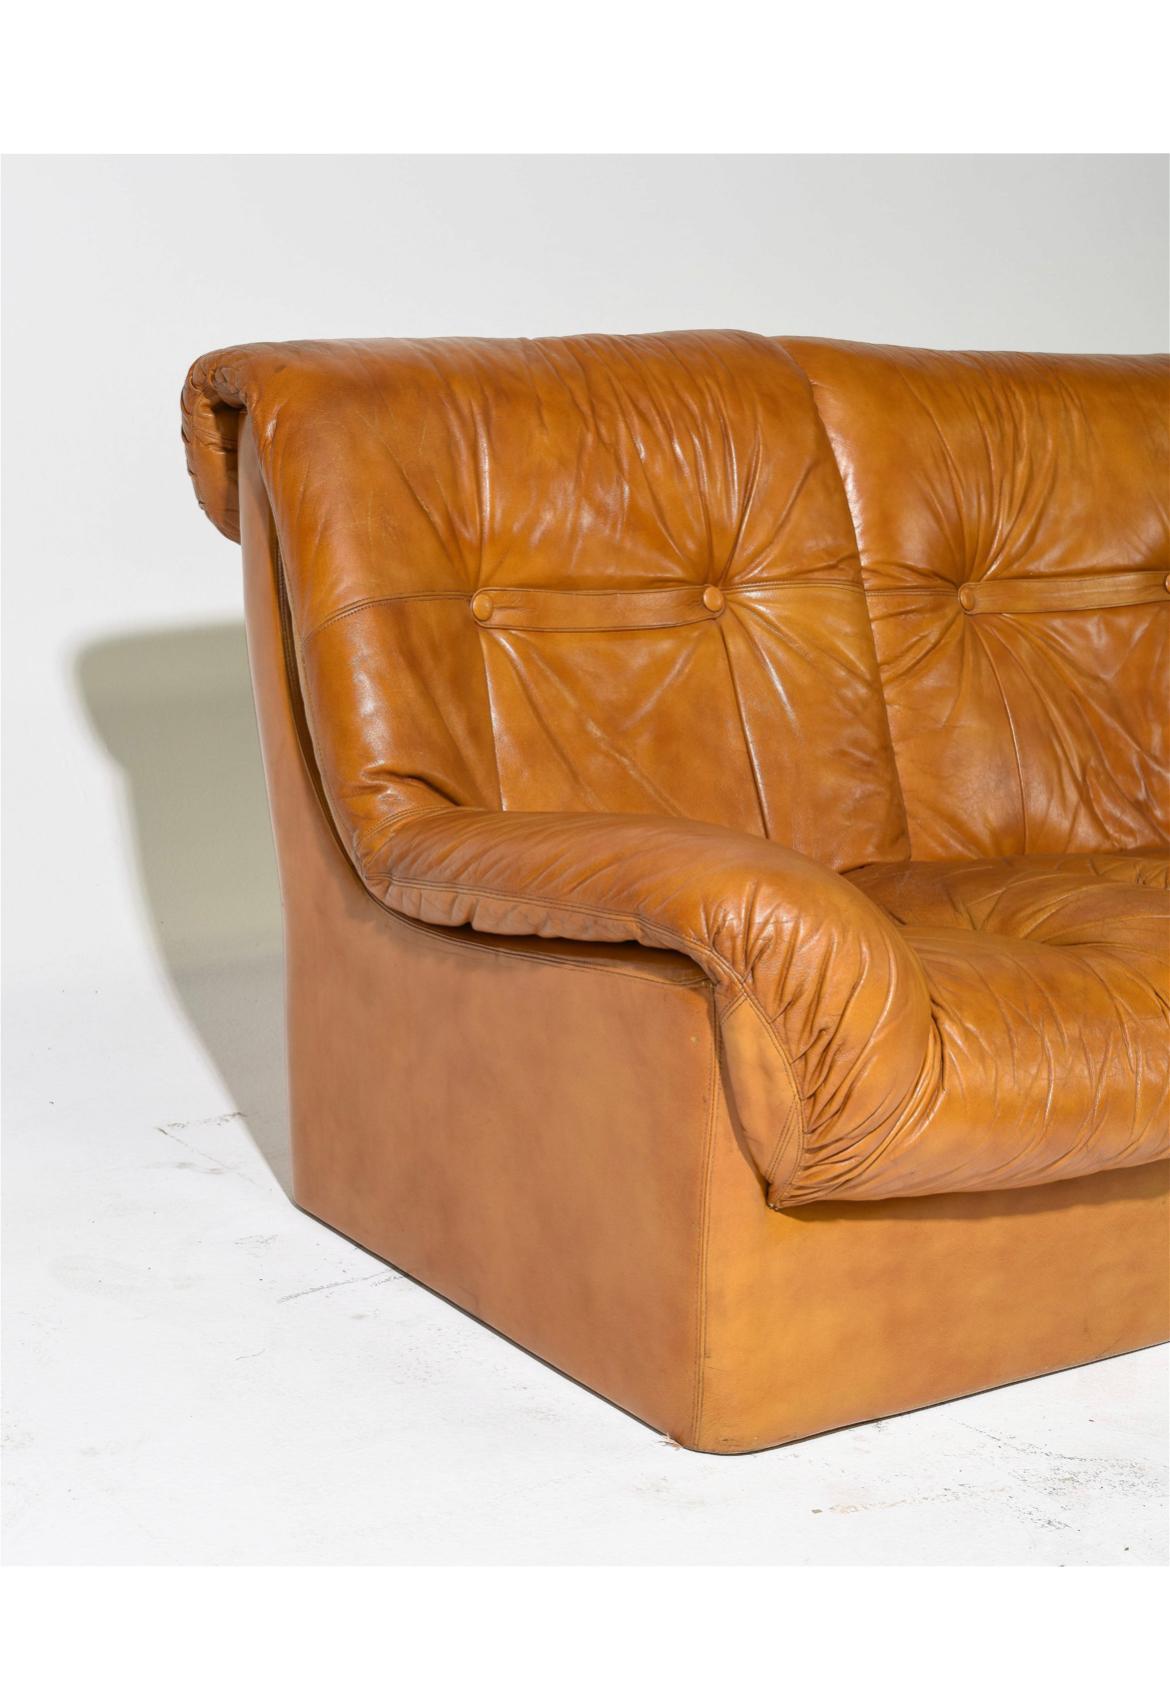 The Modern Scandinavian Danish modern Tan Leather puffy 3 seat Sofa. Belle condition vintage cassé dans le cuir doucement utilisé. Cuir souple brun tan avec design Puffy. Belle patine. Fabriqué au Danemark. Situé à Brooklyn NYC.

86